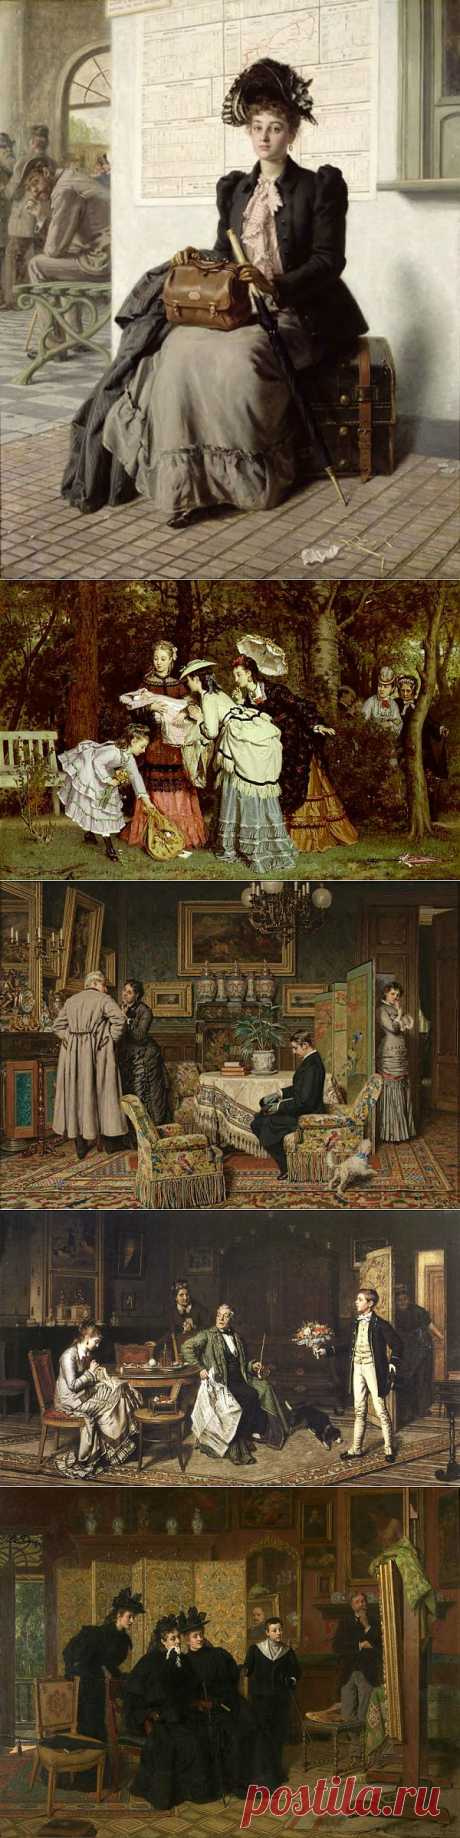 Художник Evert Jan Boks (1838-1914).